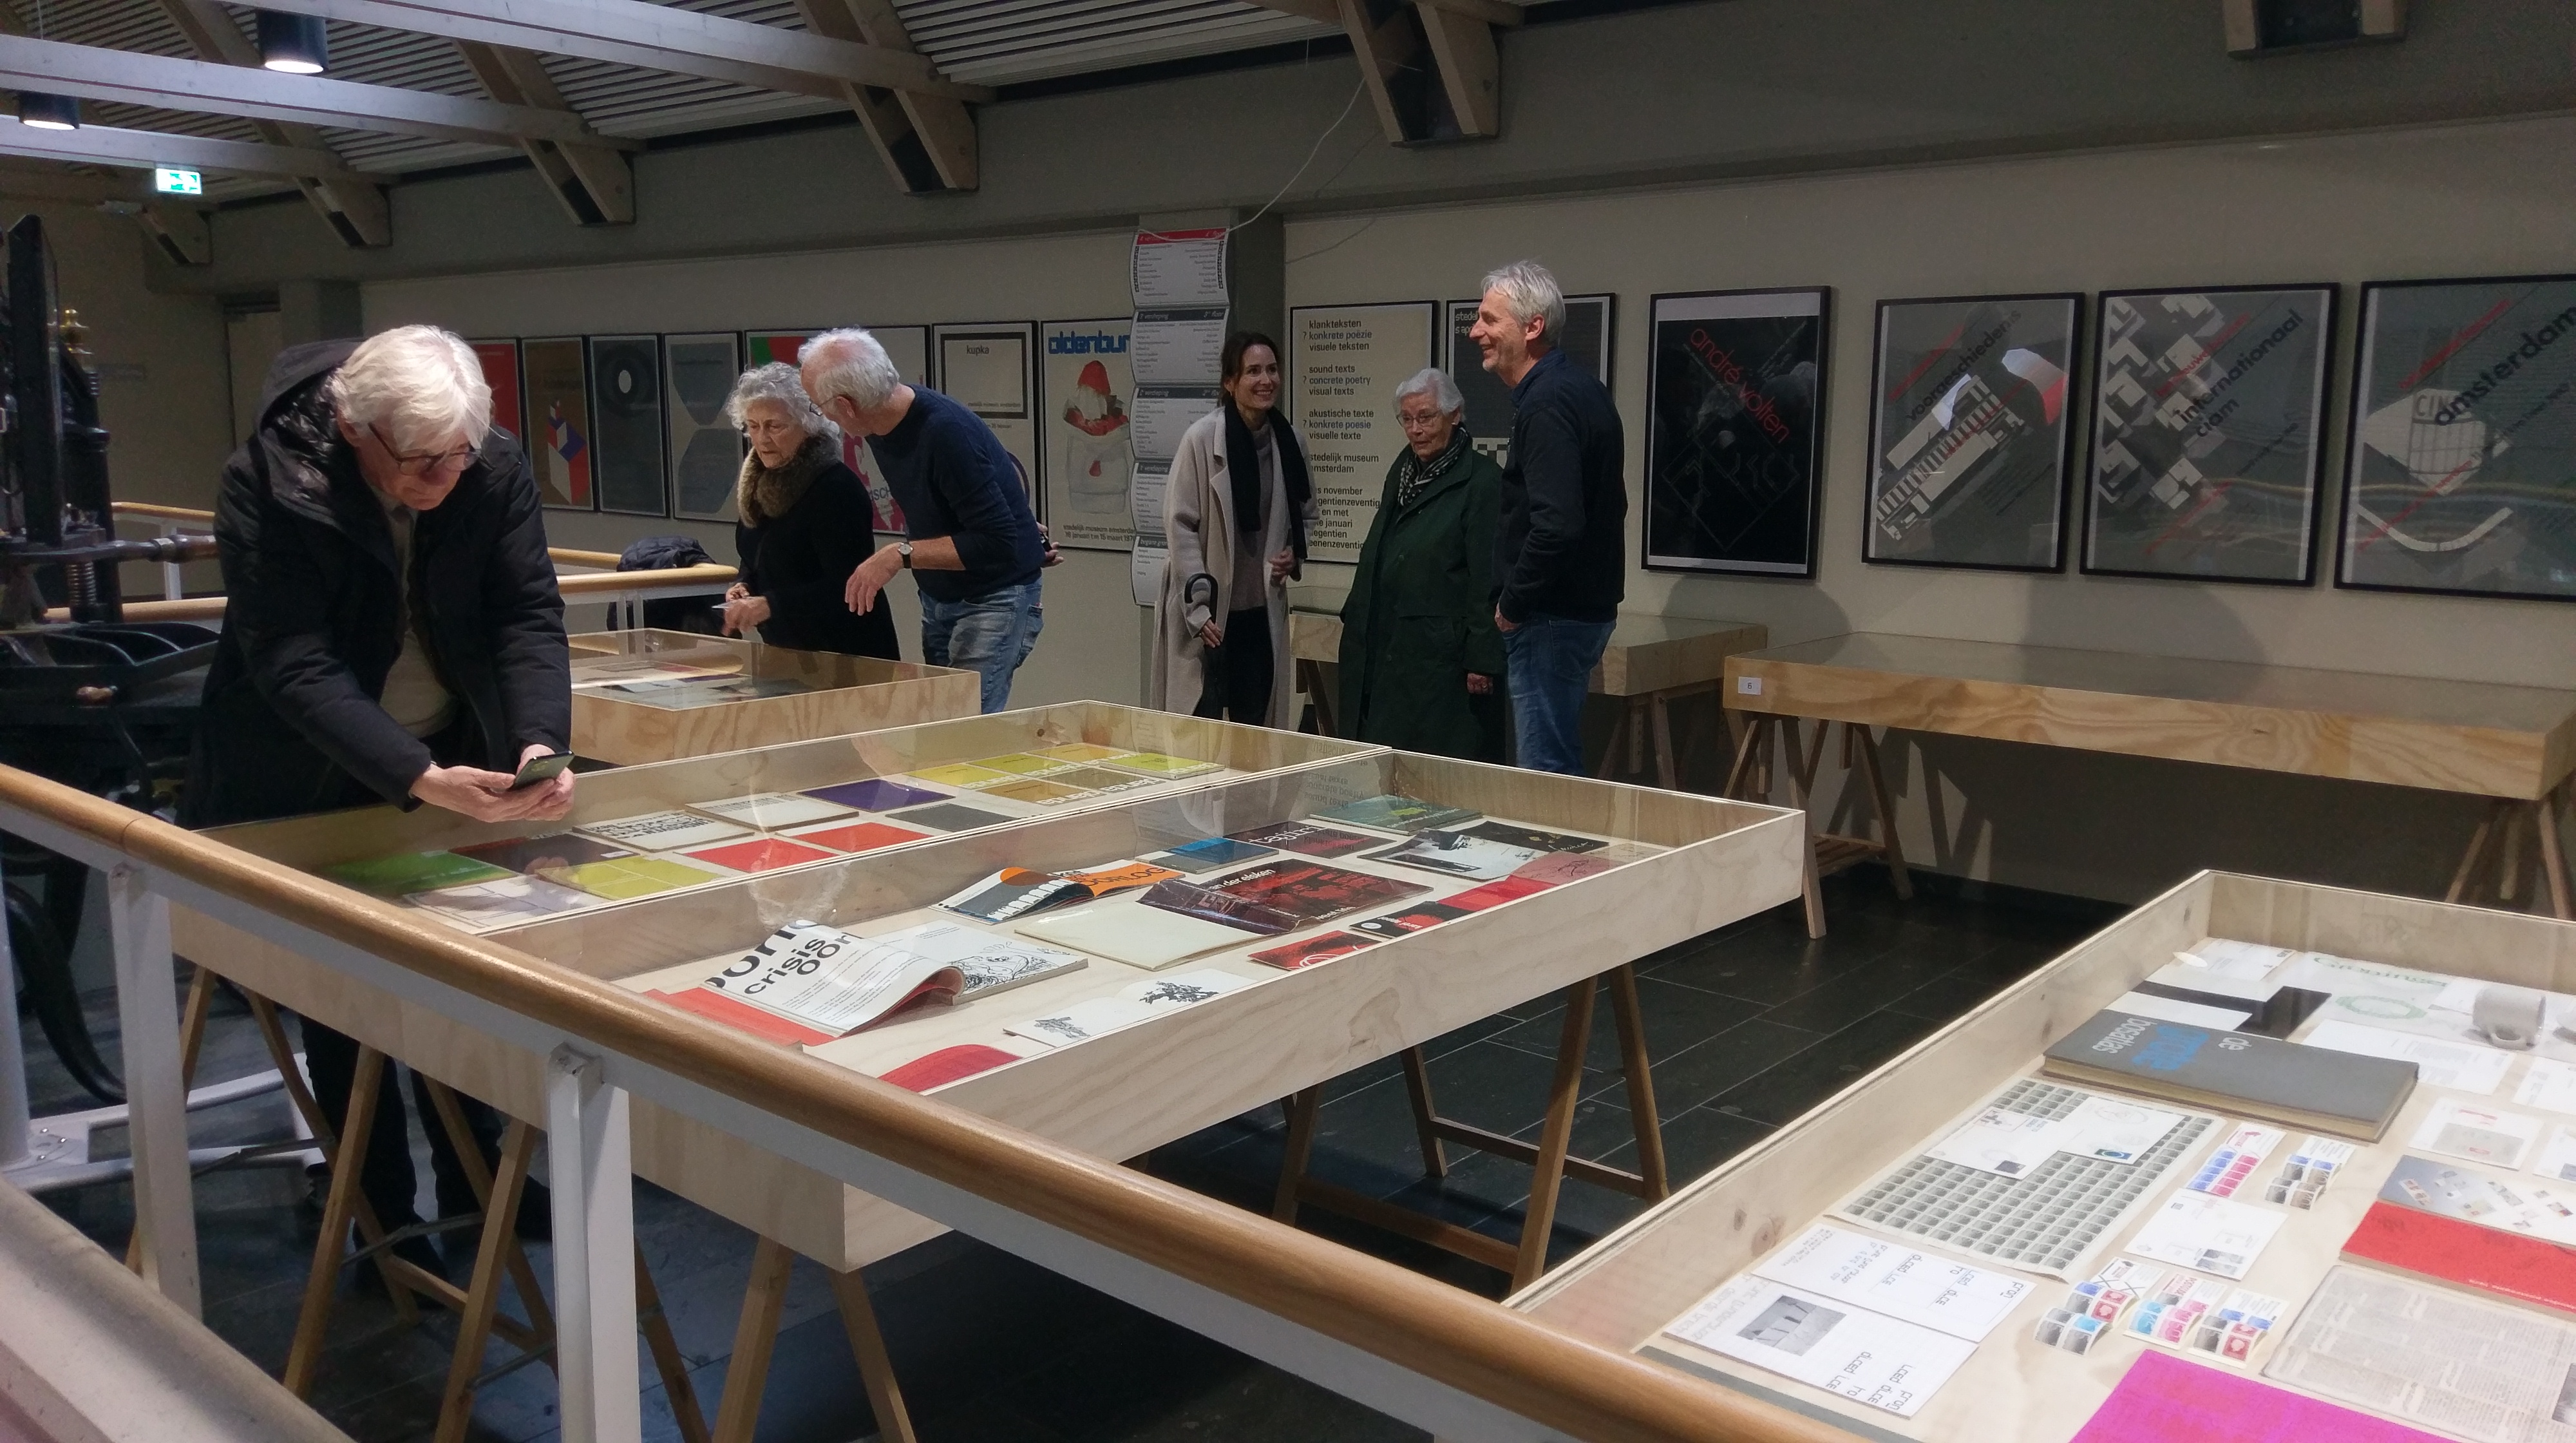 De familie Crouwel bekijkt de tentoonstelling over vormgever Wim Crouwel